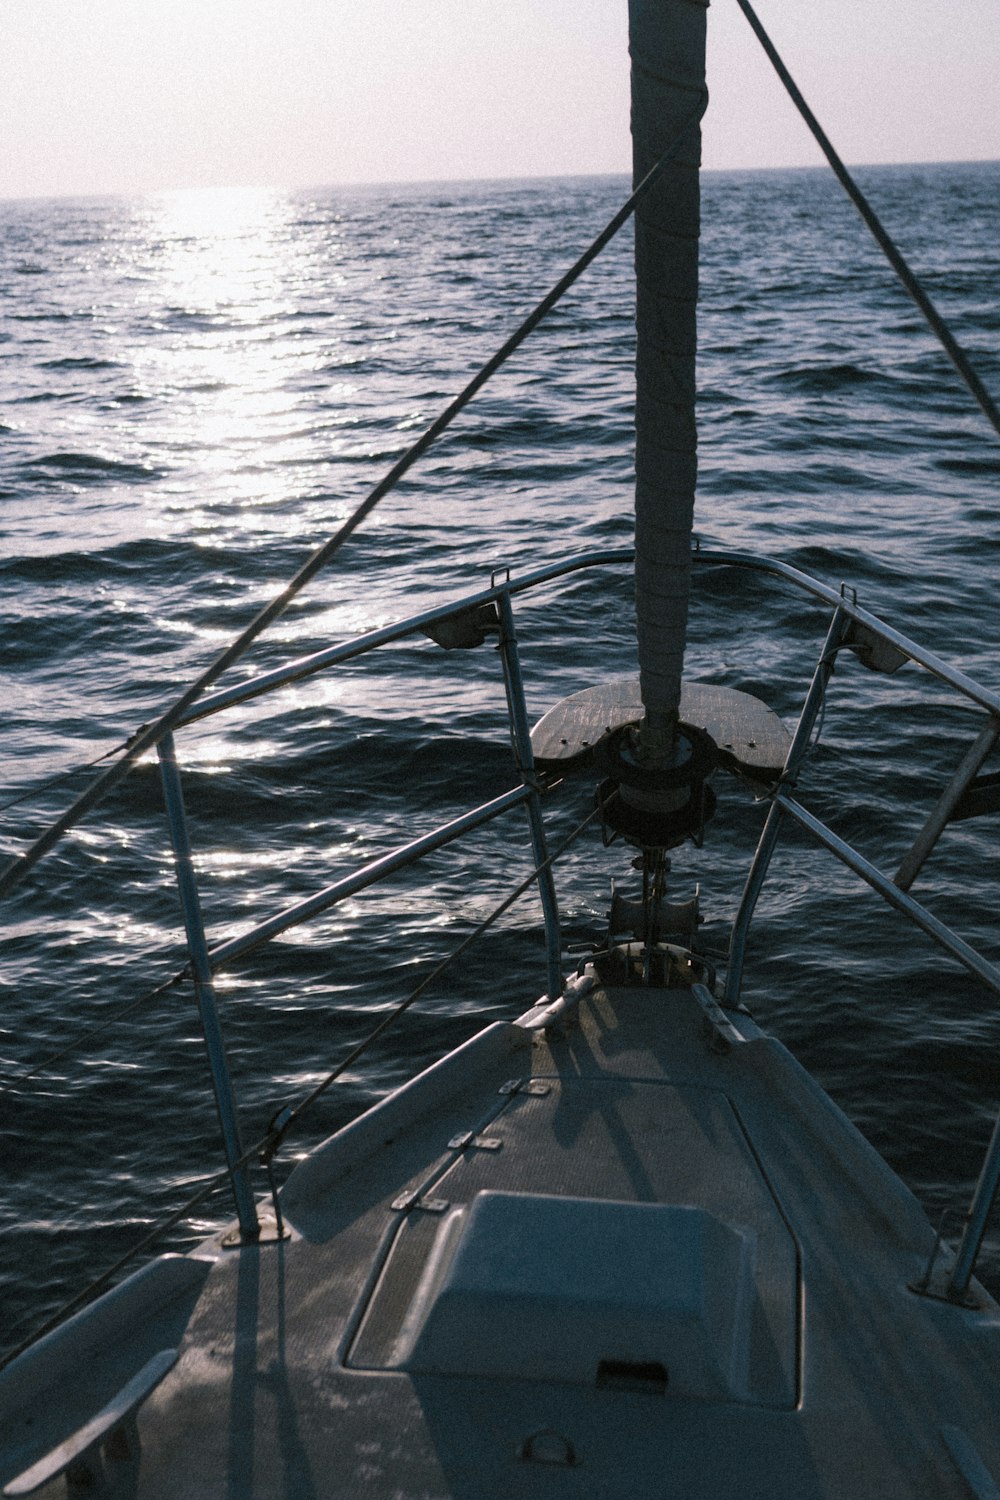 vara de pesca preta e branca no mar azul durante o dia